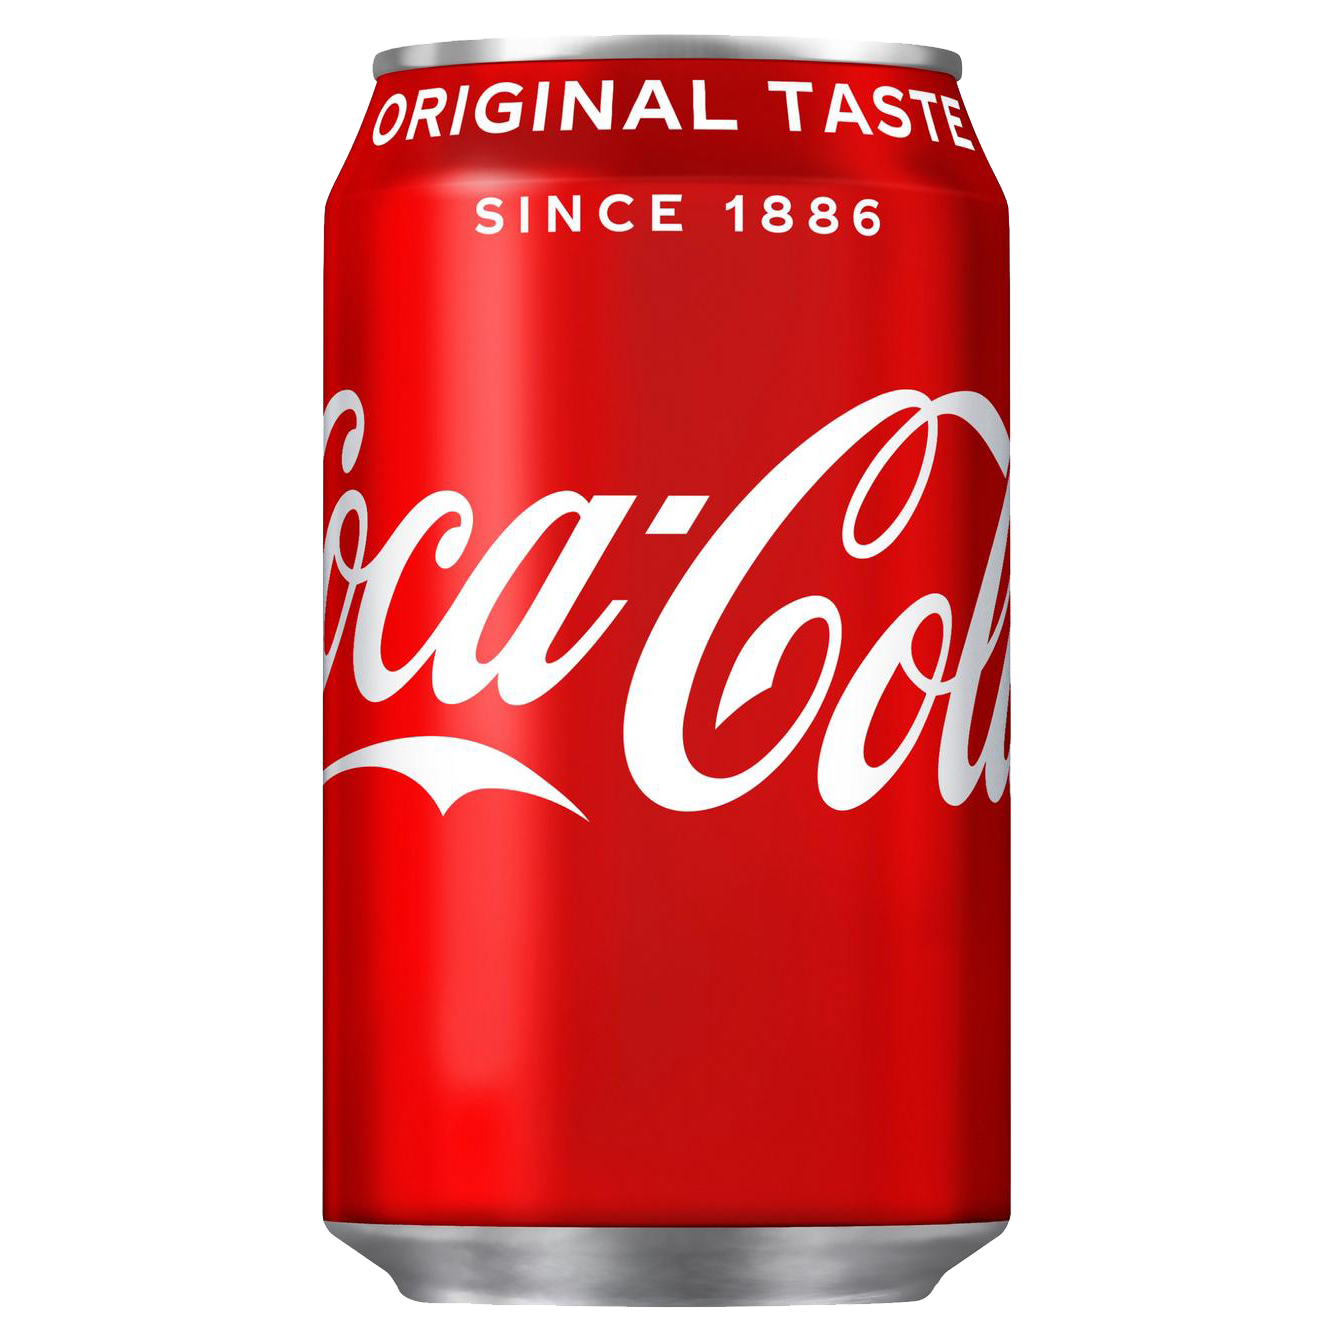 Coca-Cola Original Taste 330ml Can